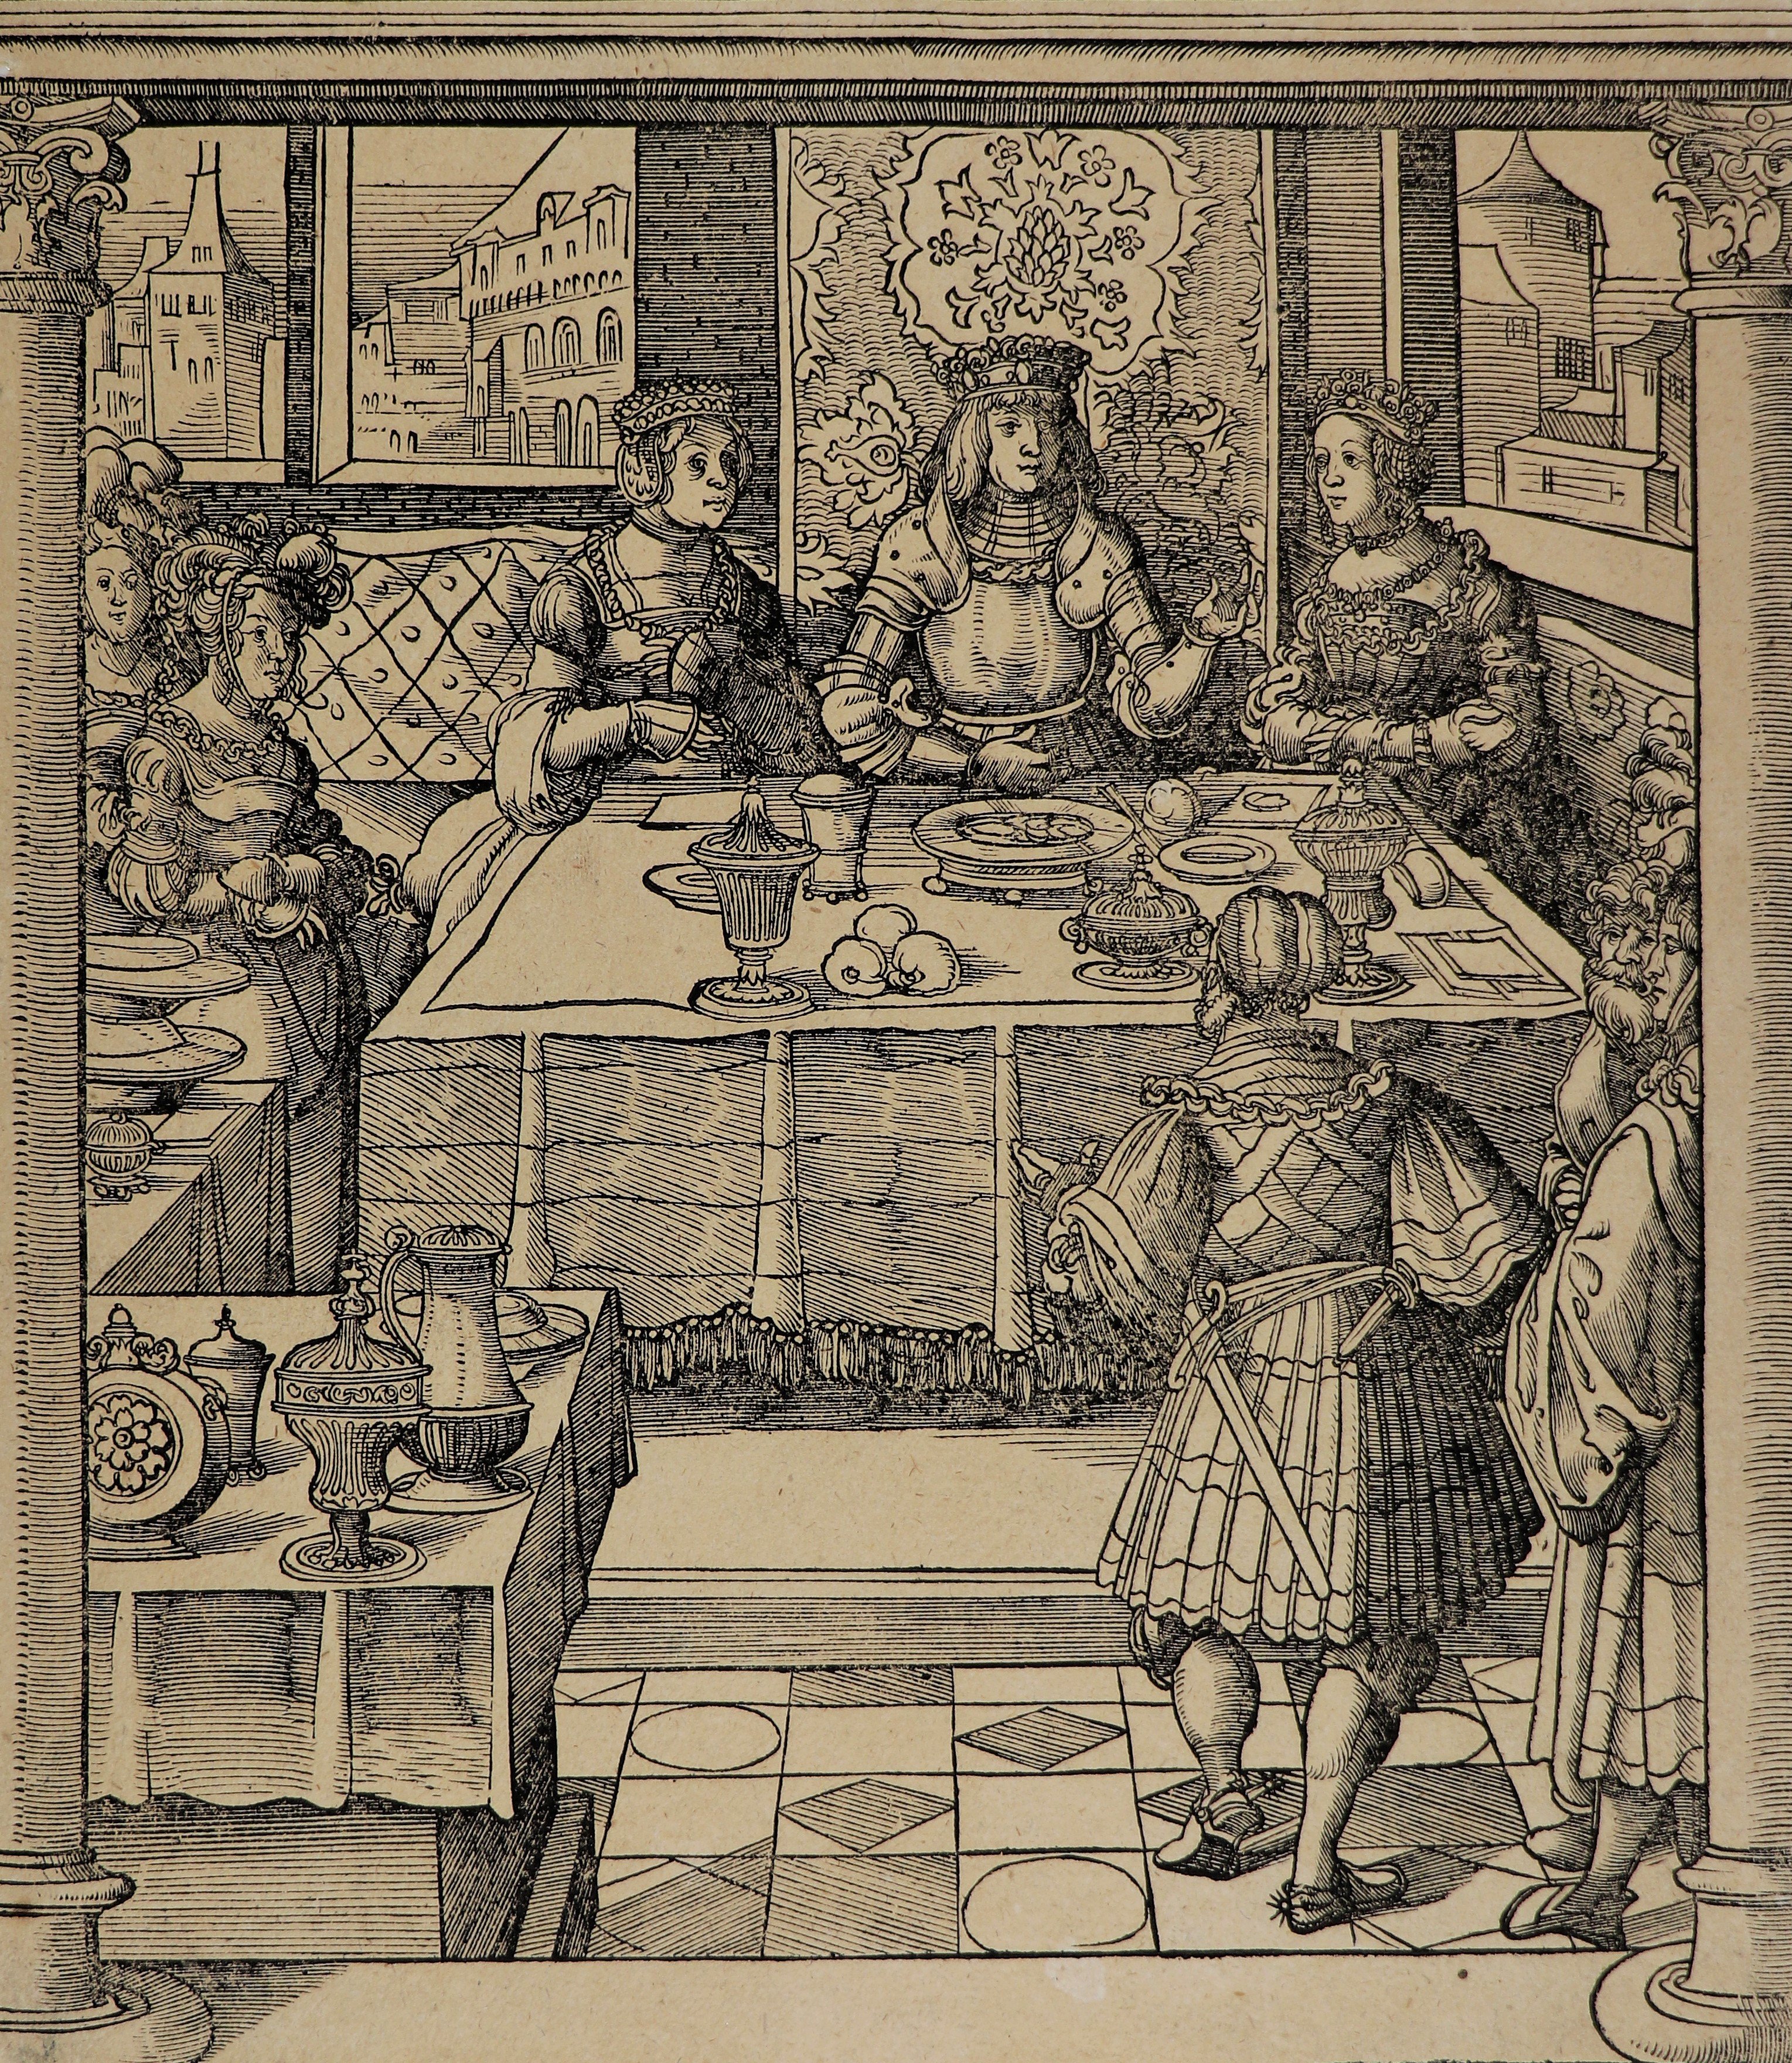 Leonhard Beck (1470 - 1522) Das costlich pankatieren, Blatt aus: Kaiser Maximilian I. (Städtisches Museum Schloss Rheydt CC0)